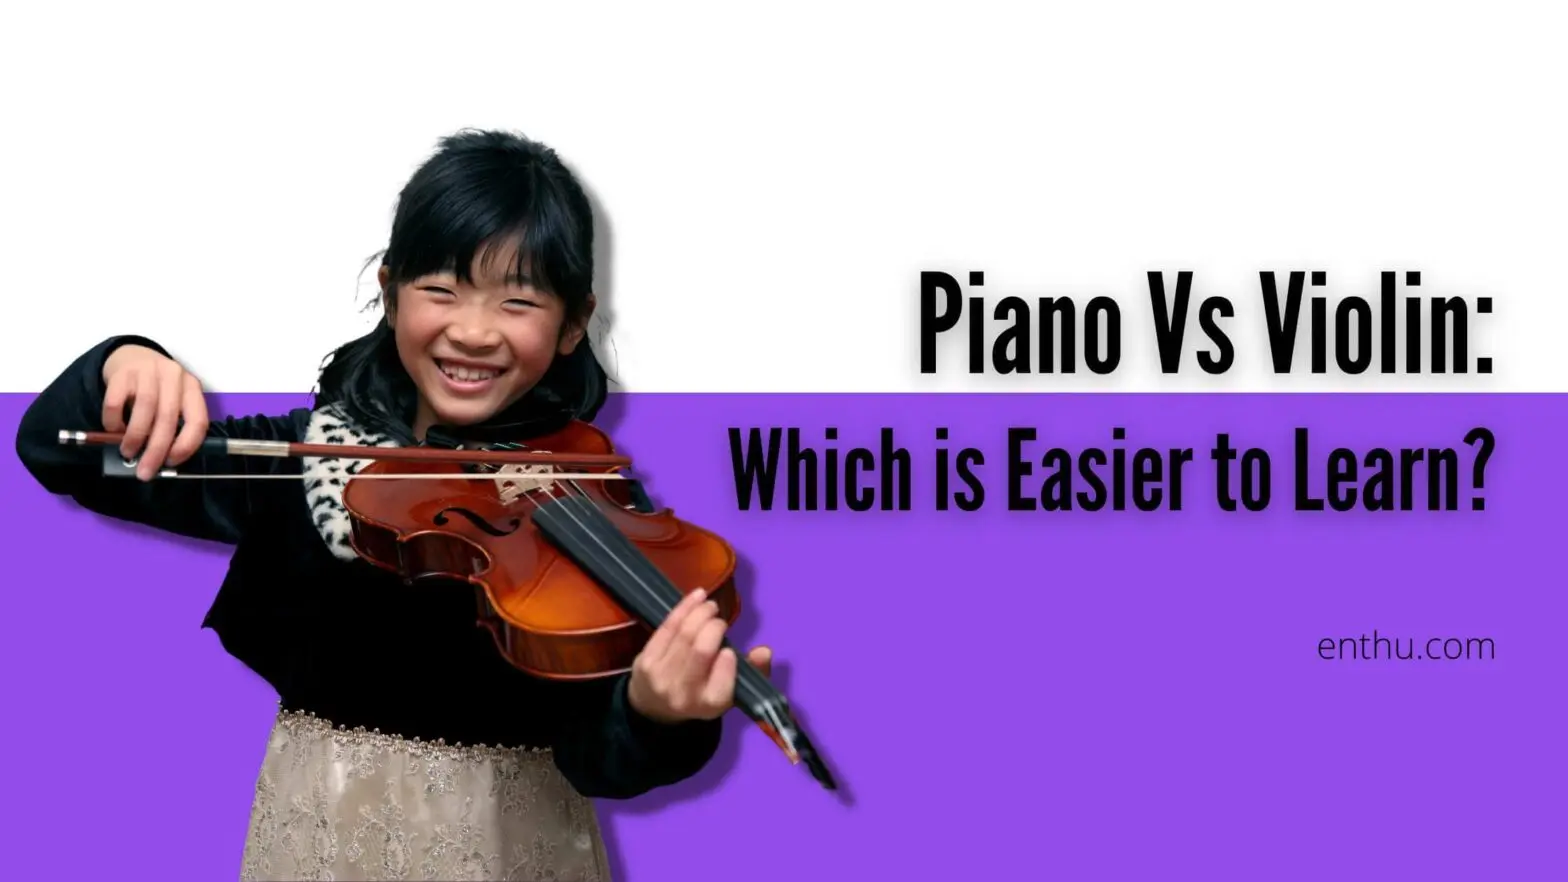 piano vs violin - Does piano or violin sound better